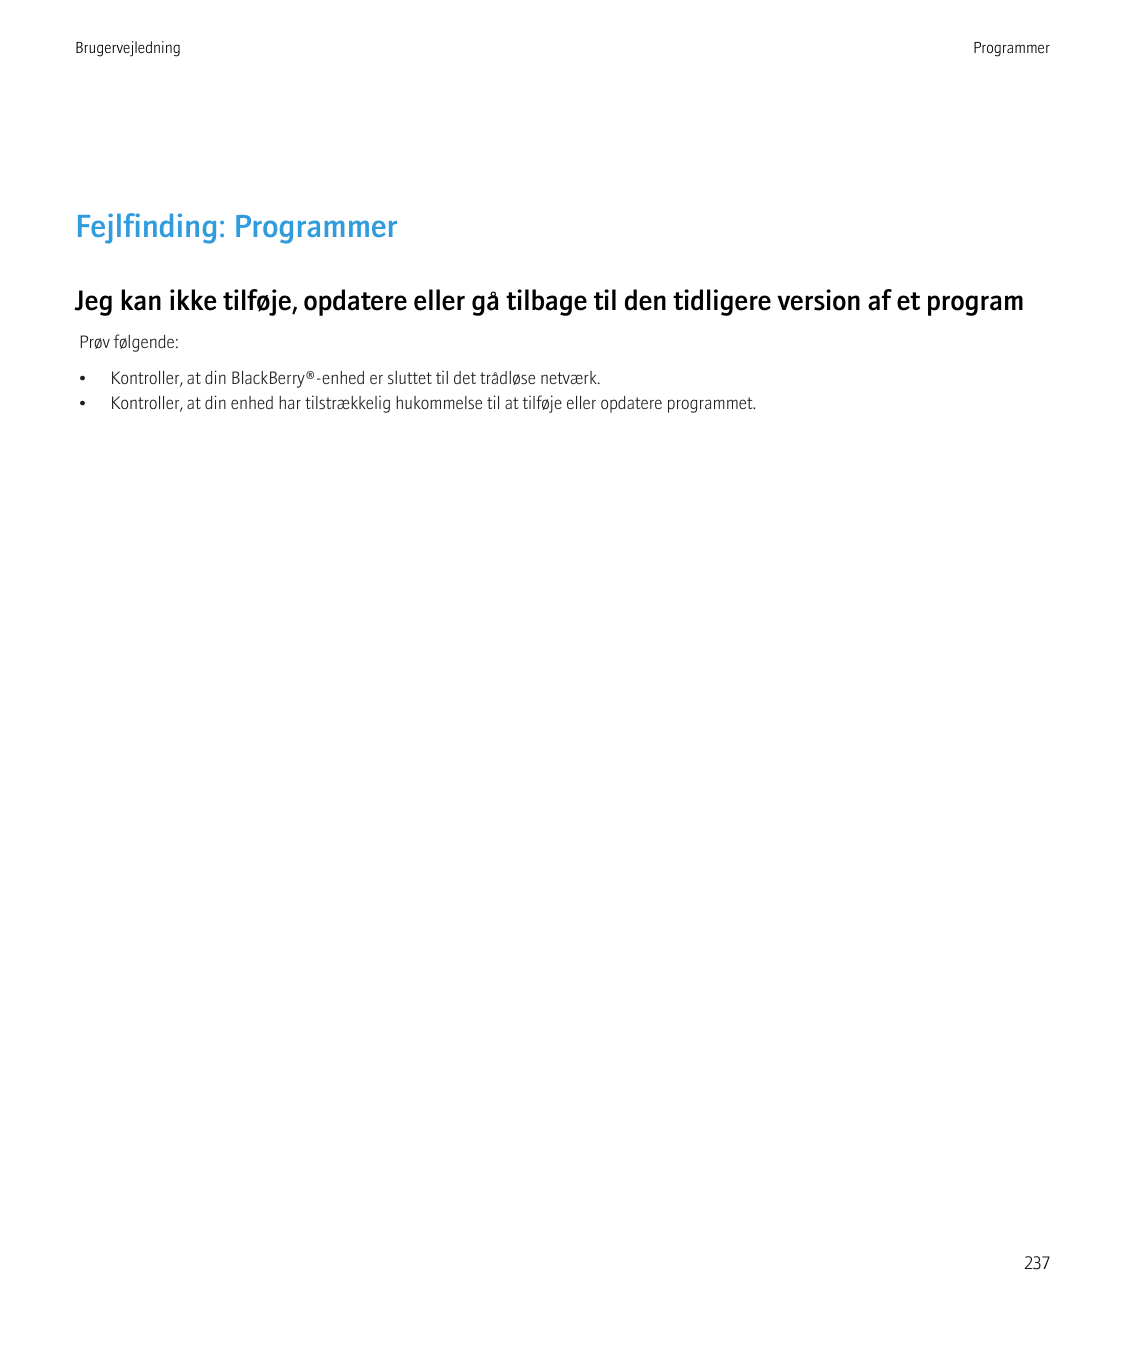 BrugervejledningProgrammerFejlfinding: ProgrammerJeg kan ikke tilføje, opdatere eller gå tilbage til den tidligere version af et